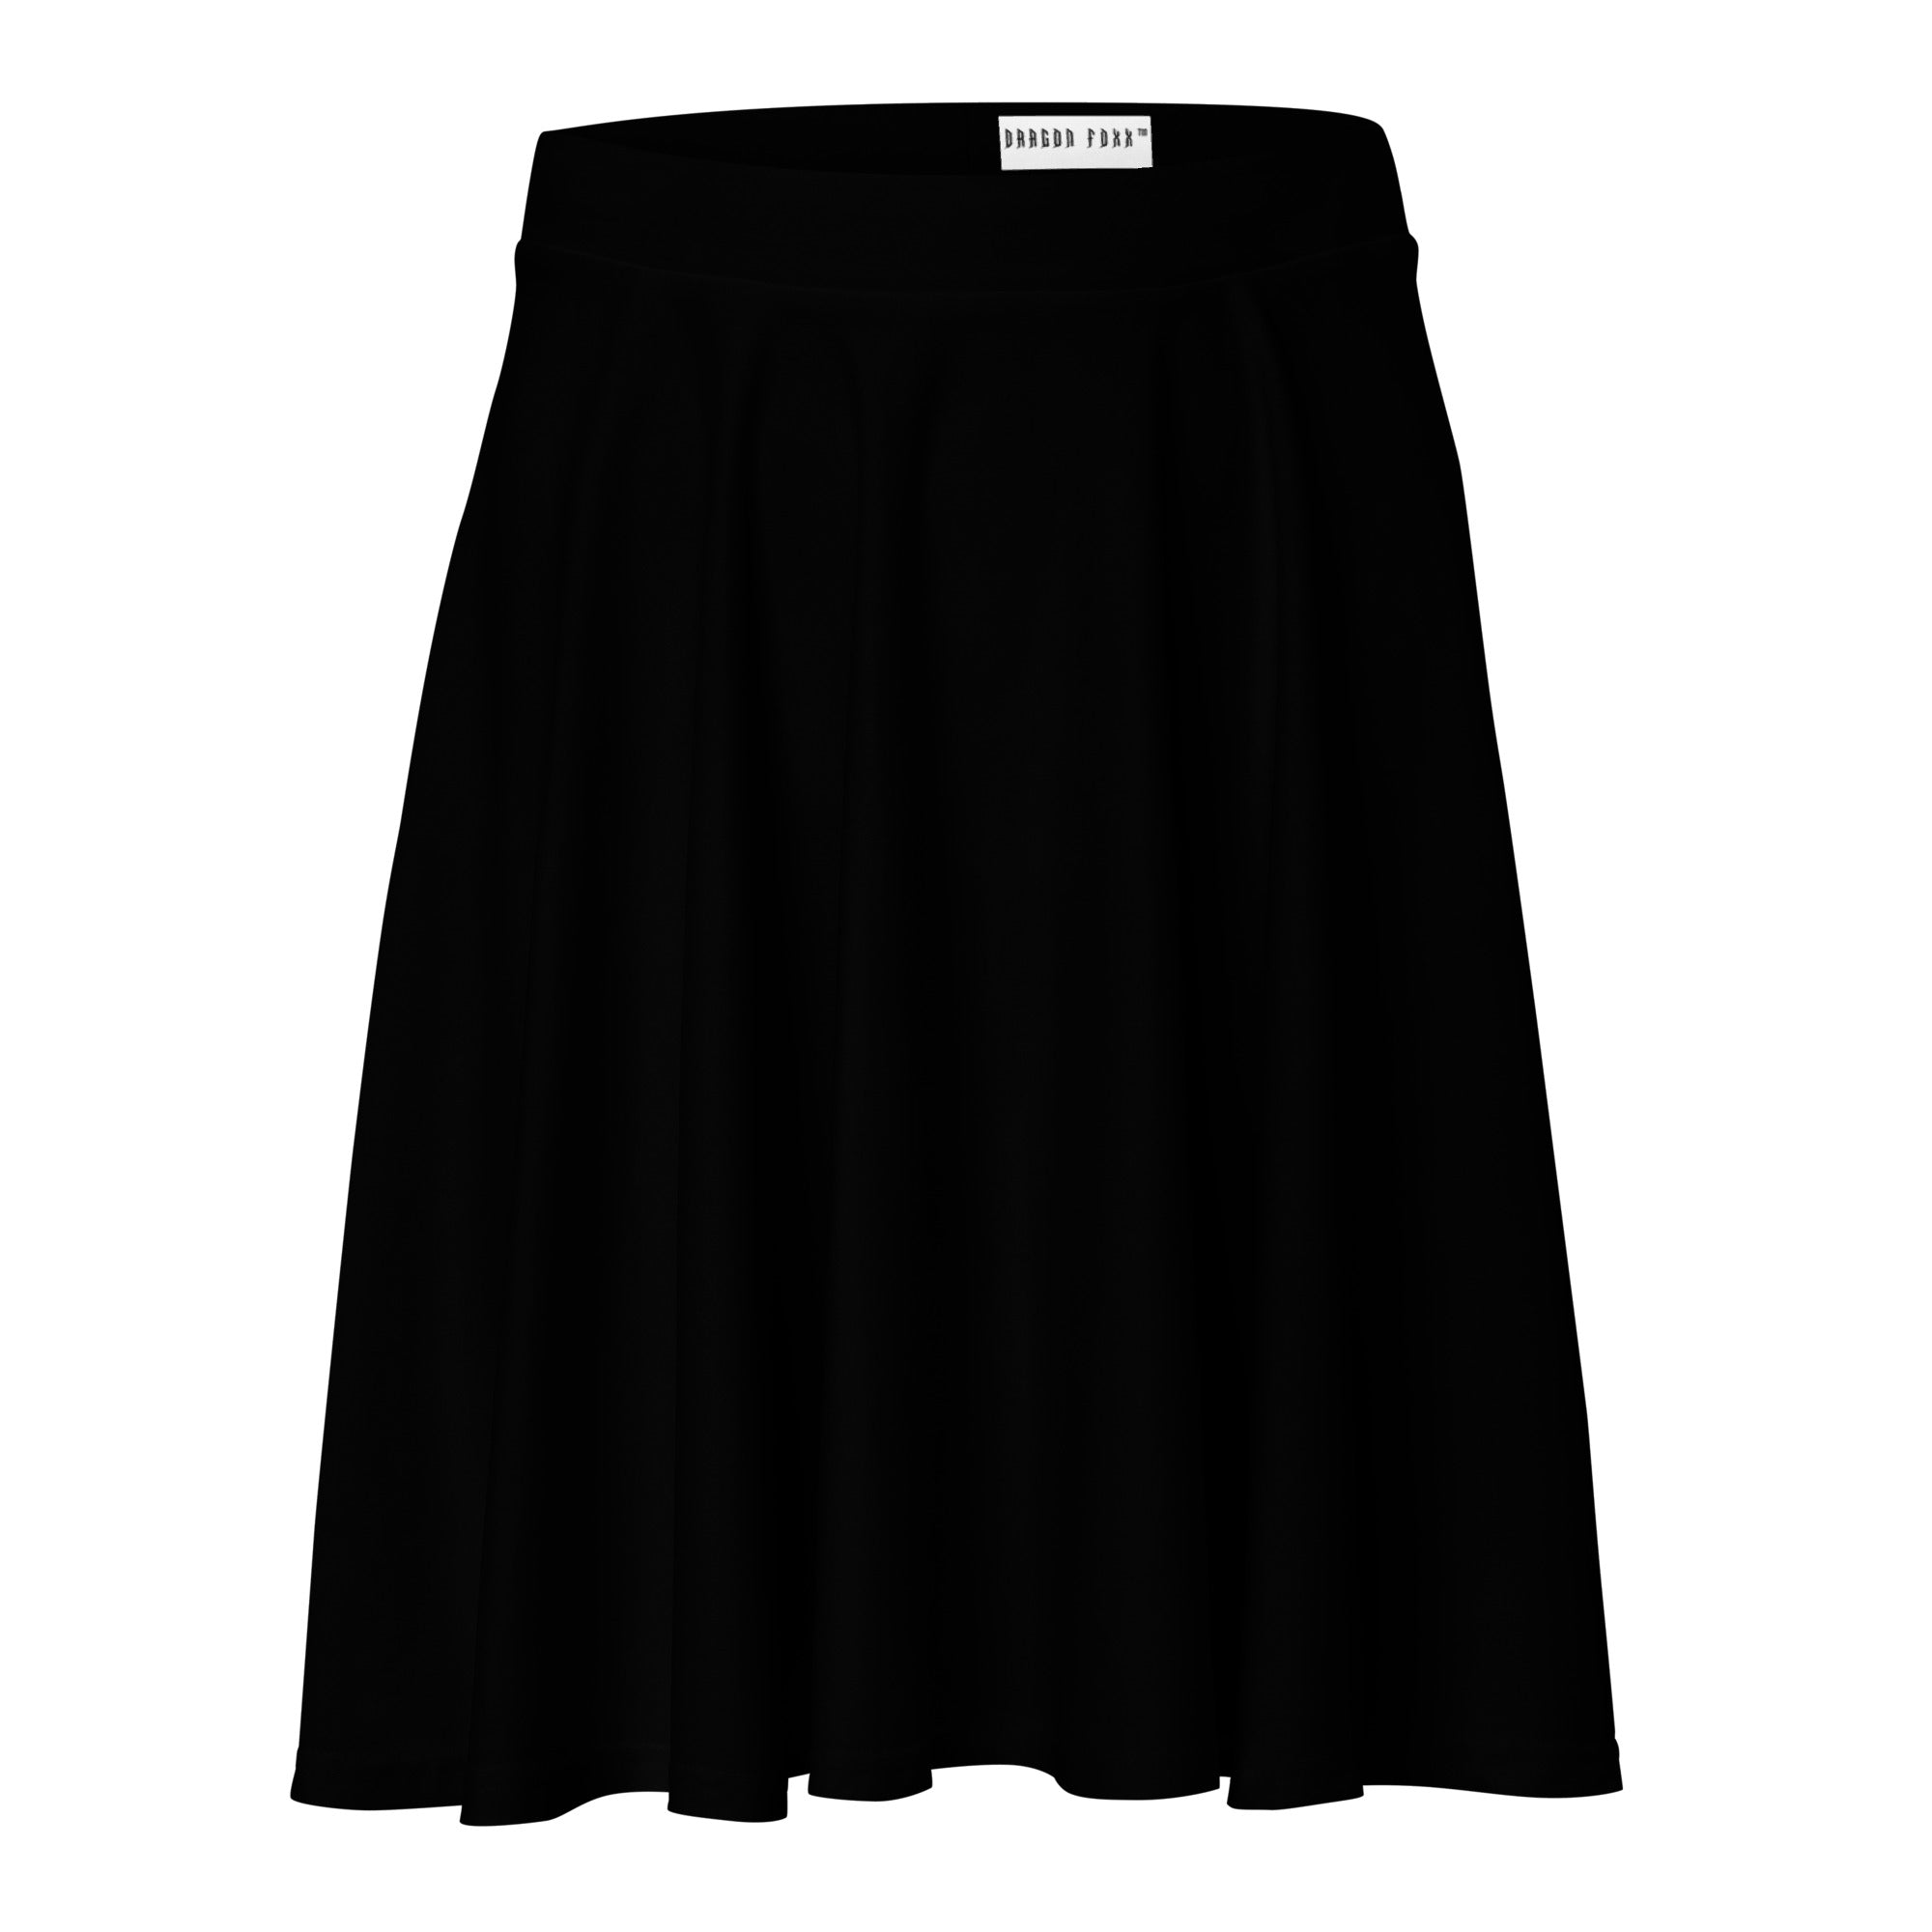 Black Skater Skirt - Skater Skirt - DRAGON FOXX™ - Black Skater Skirt - 8069339_9606 - XS - Black - Skater Skirt - Black - Black Skater Skirt - Black Skirt